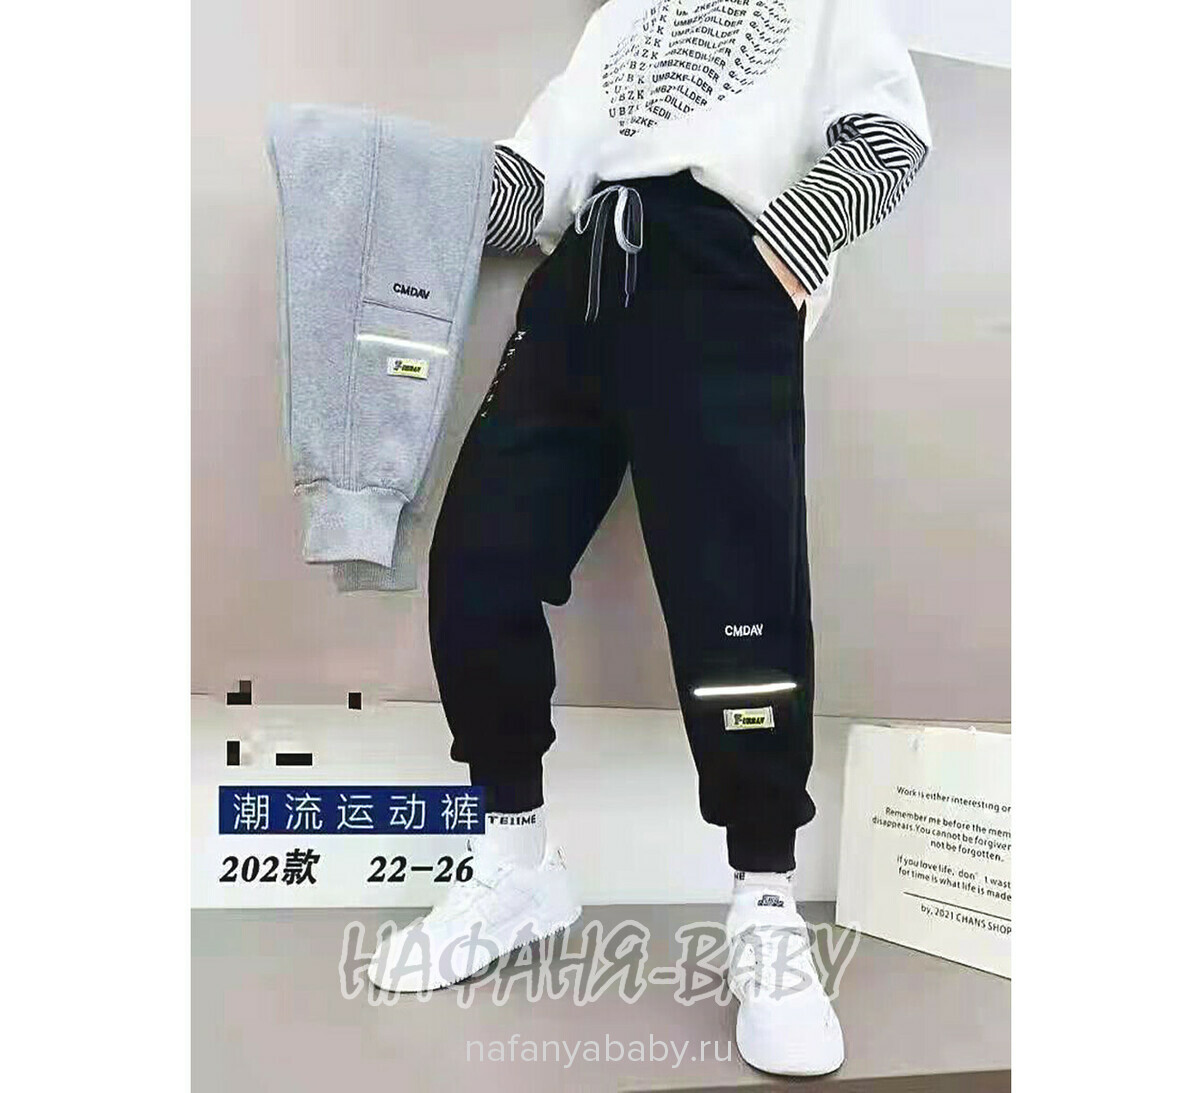 Зимние брюки на флисе XING арт: 202, 5-9 лет, оптом Китай (Пекин)